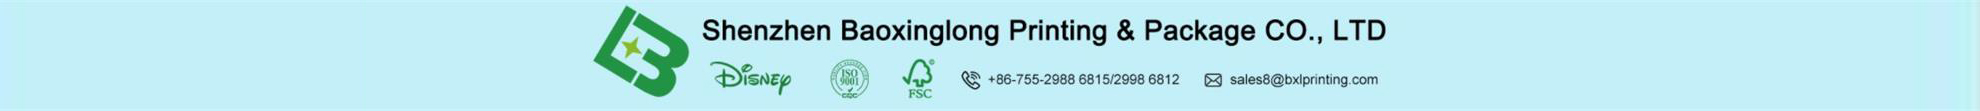 Shenzhen Baoxinglong Printing & Packaging Co.,ltd.